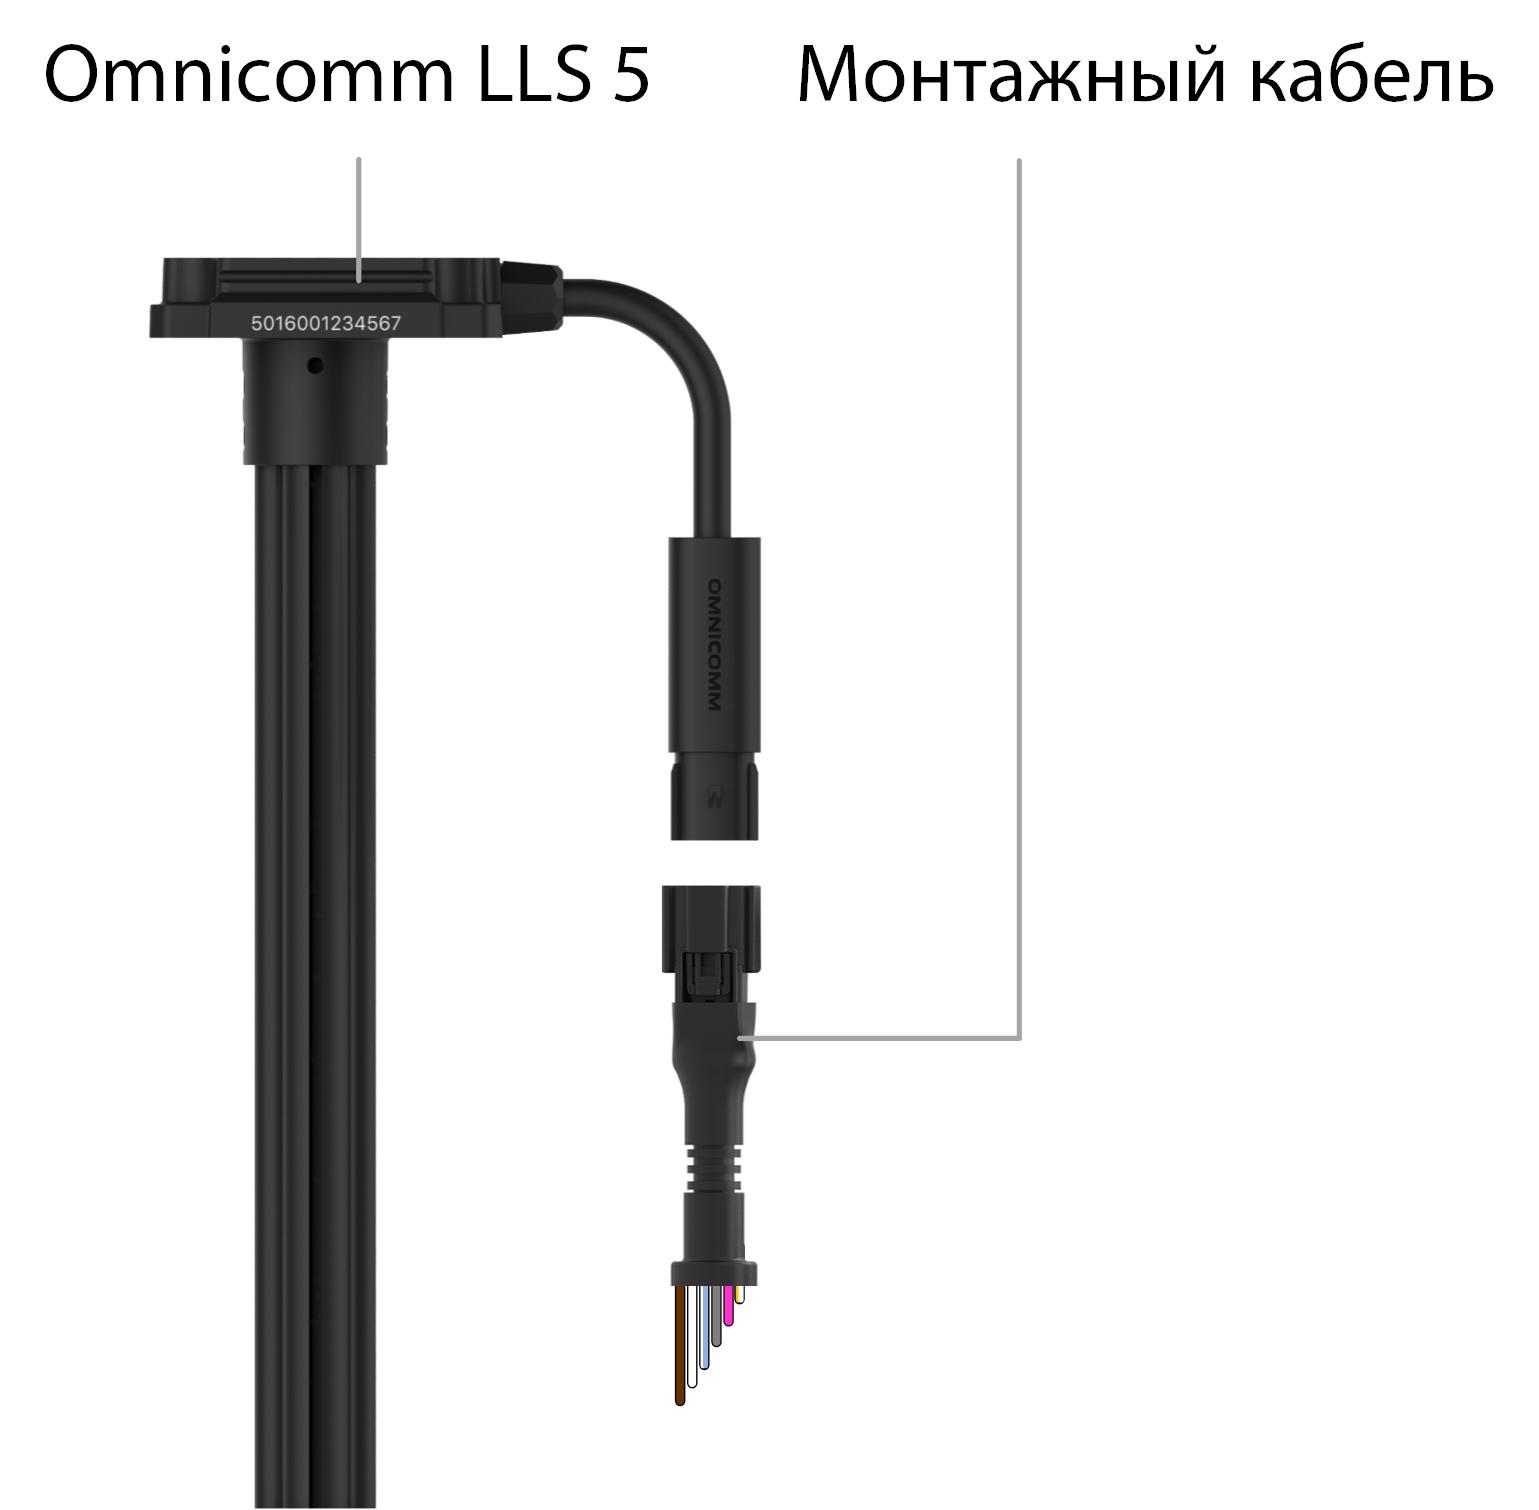 Подключение датчика Omnicomm LLS 5 